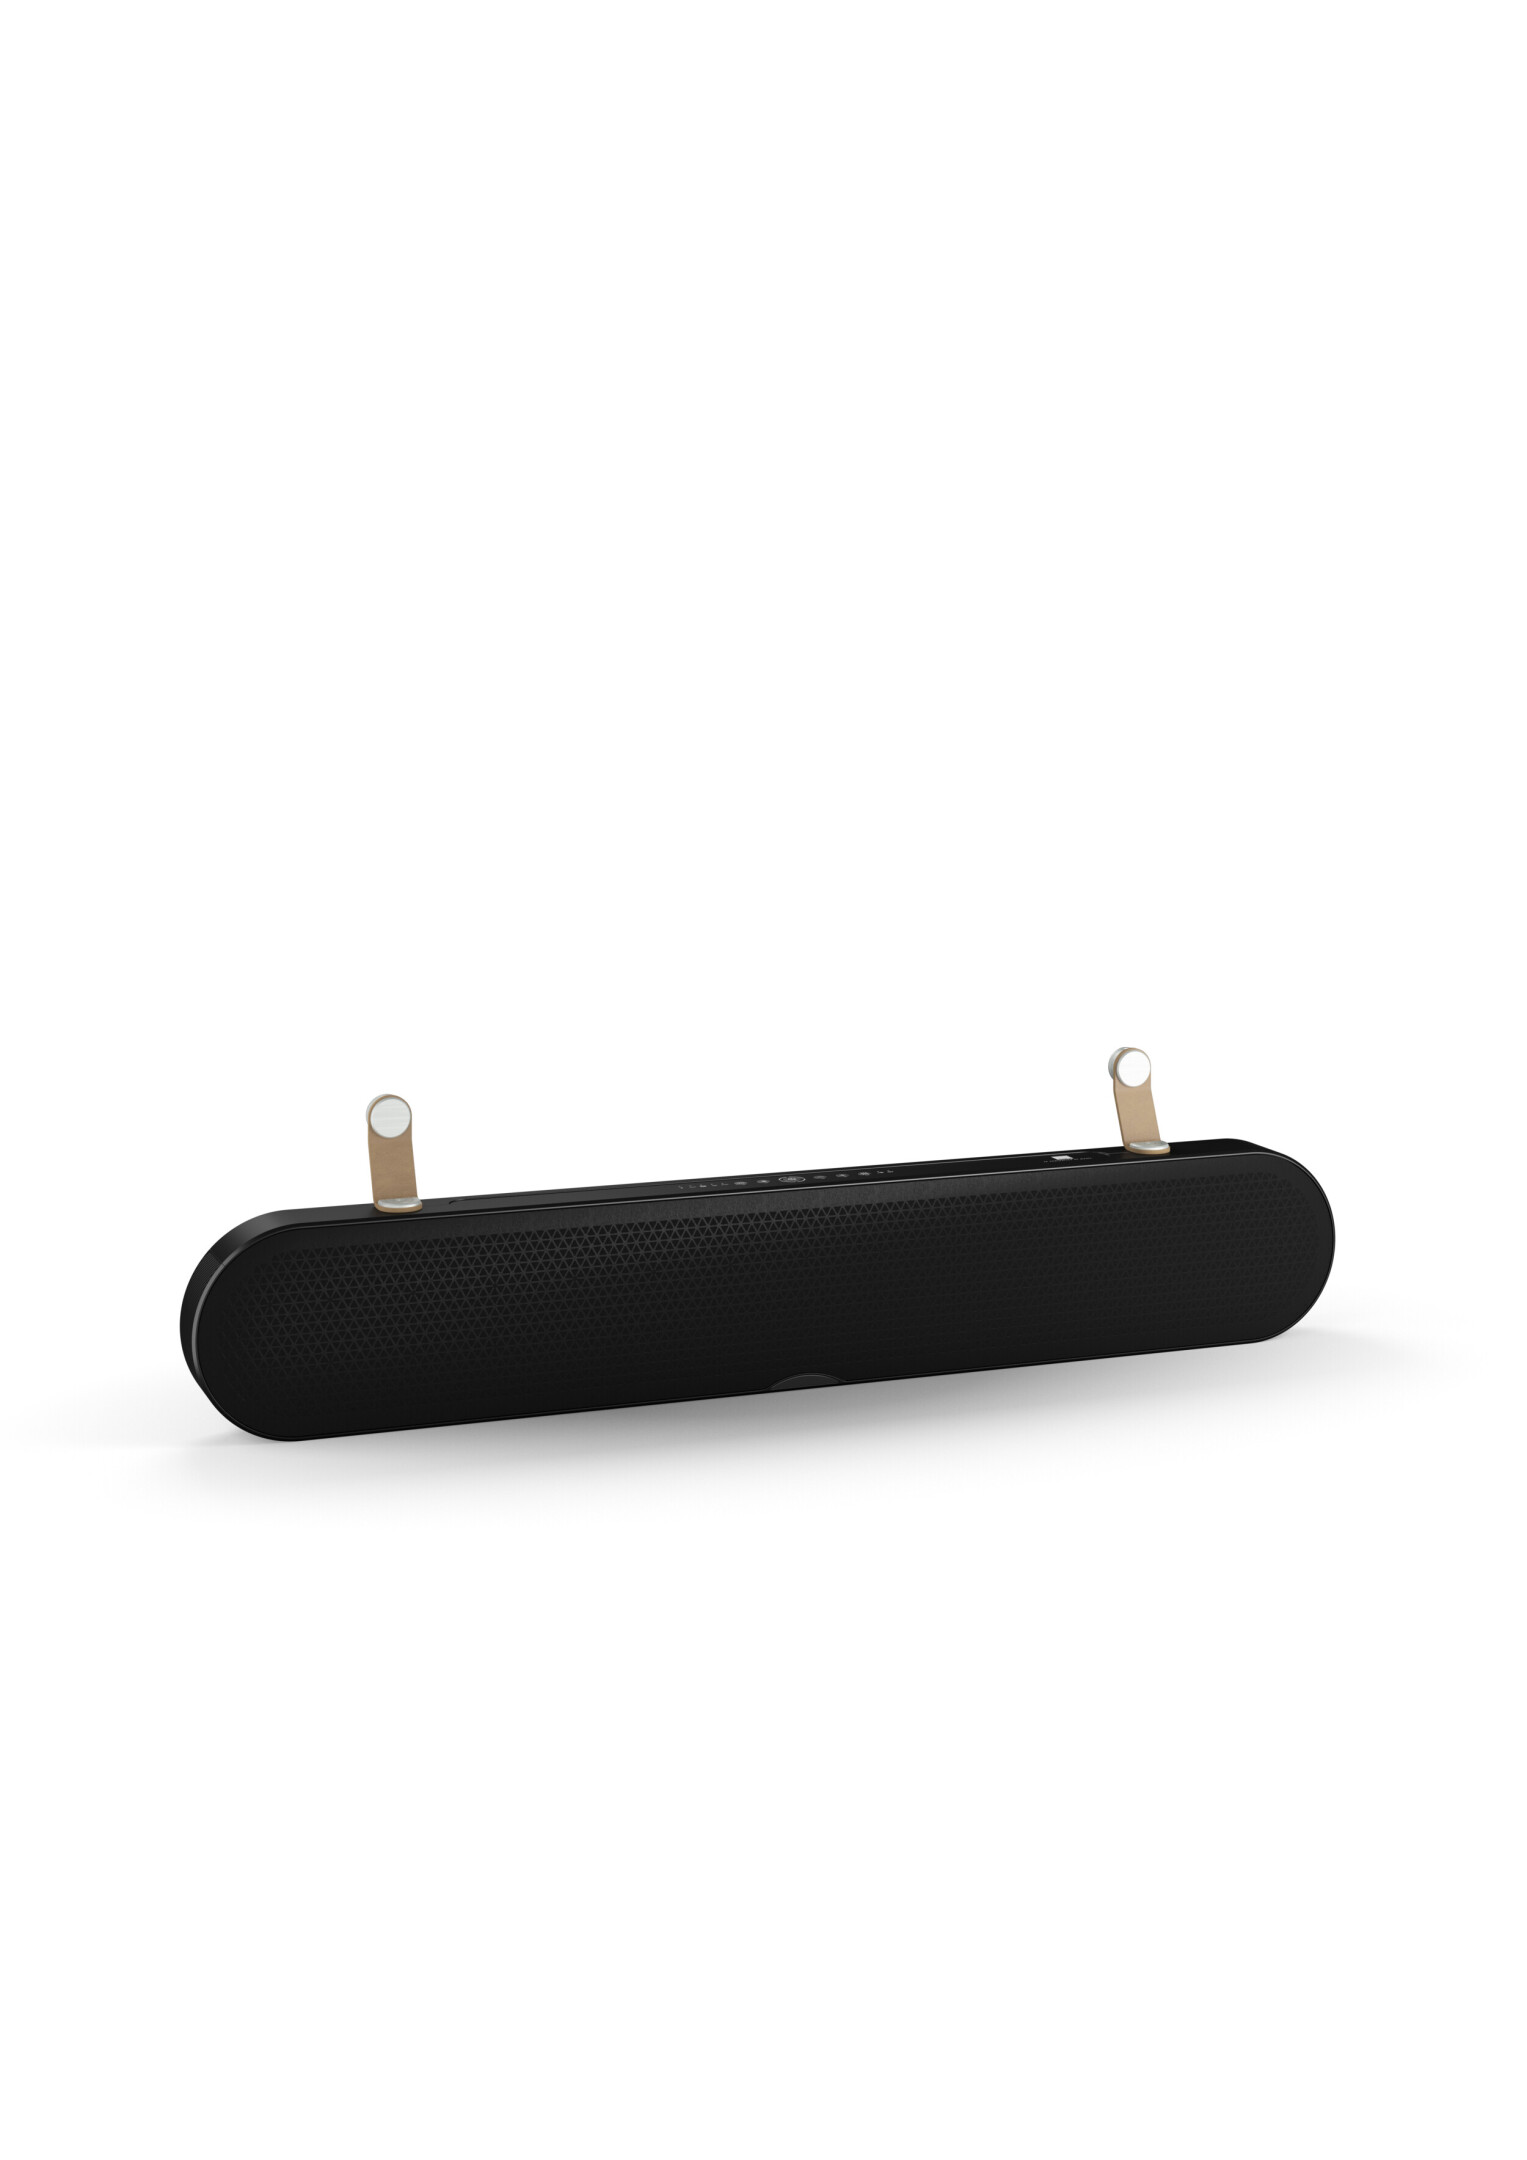 DALI-Katch-ONE-2-Ka-nal-Sound-bar-mit-Bluetooth-schwarz